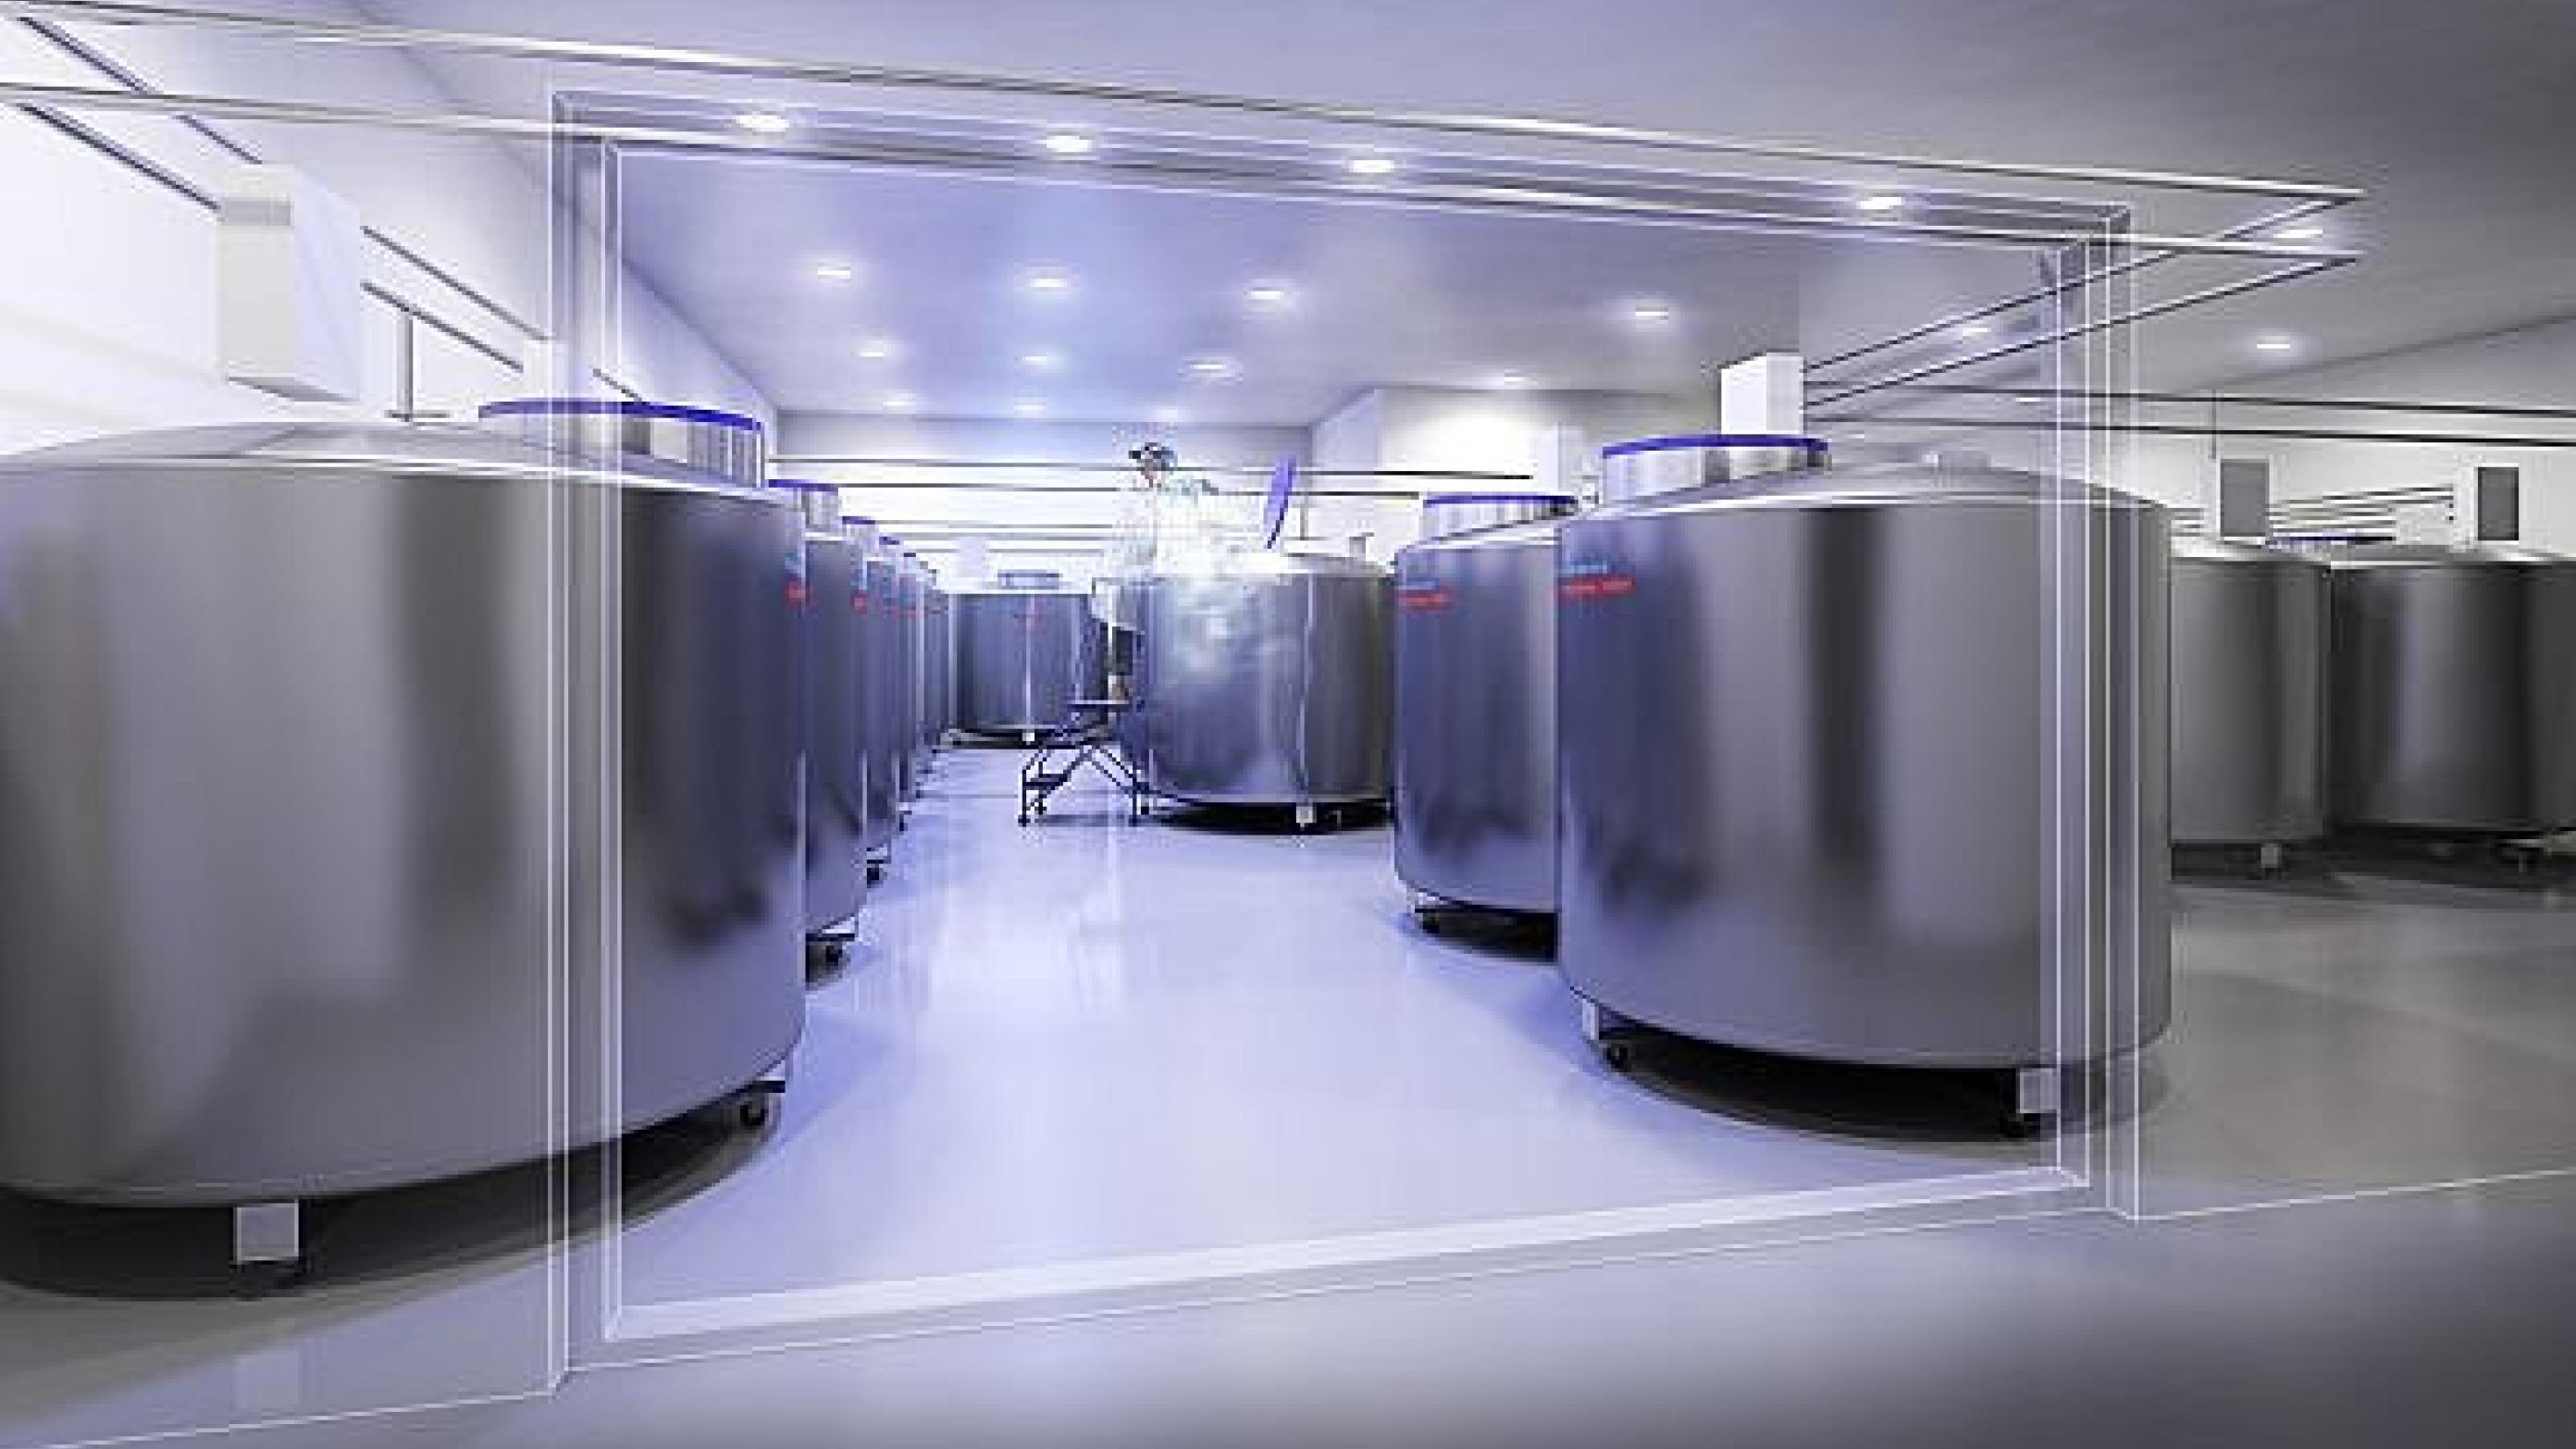 I biobankens nitrogenrum er der plads til 30 nitrogentanke, som hver kan indeholde 225.000 prøver. Prøverne lagres ved -196 grader. Foto: ssi.dk